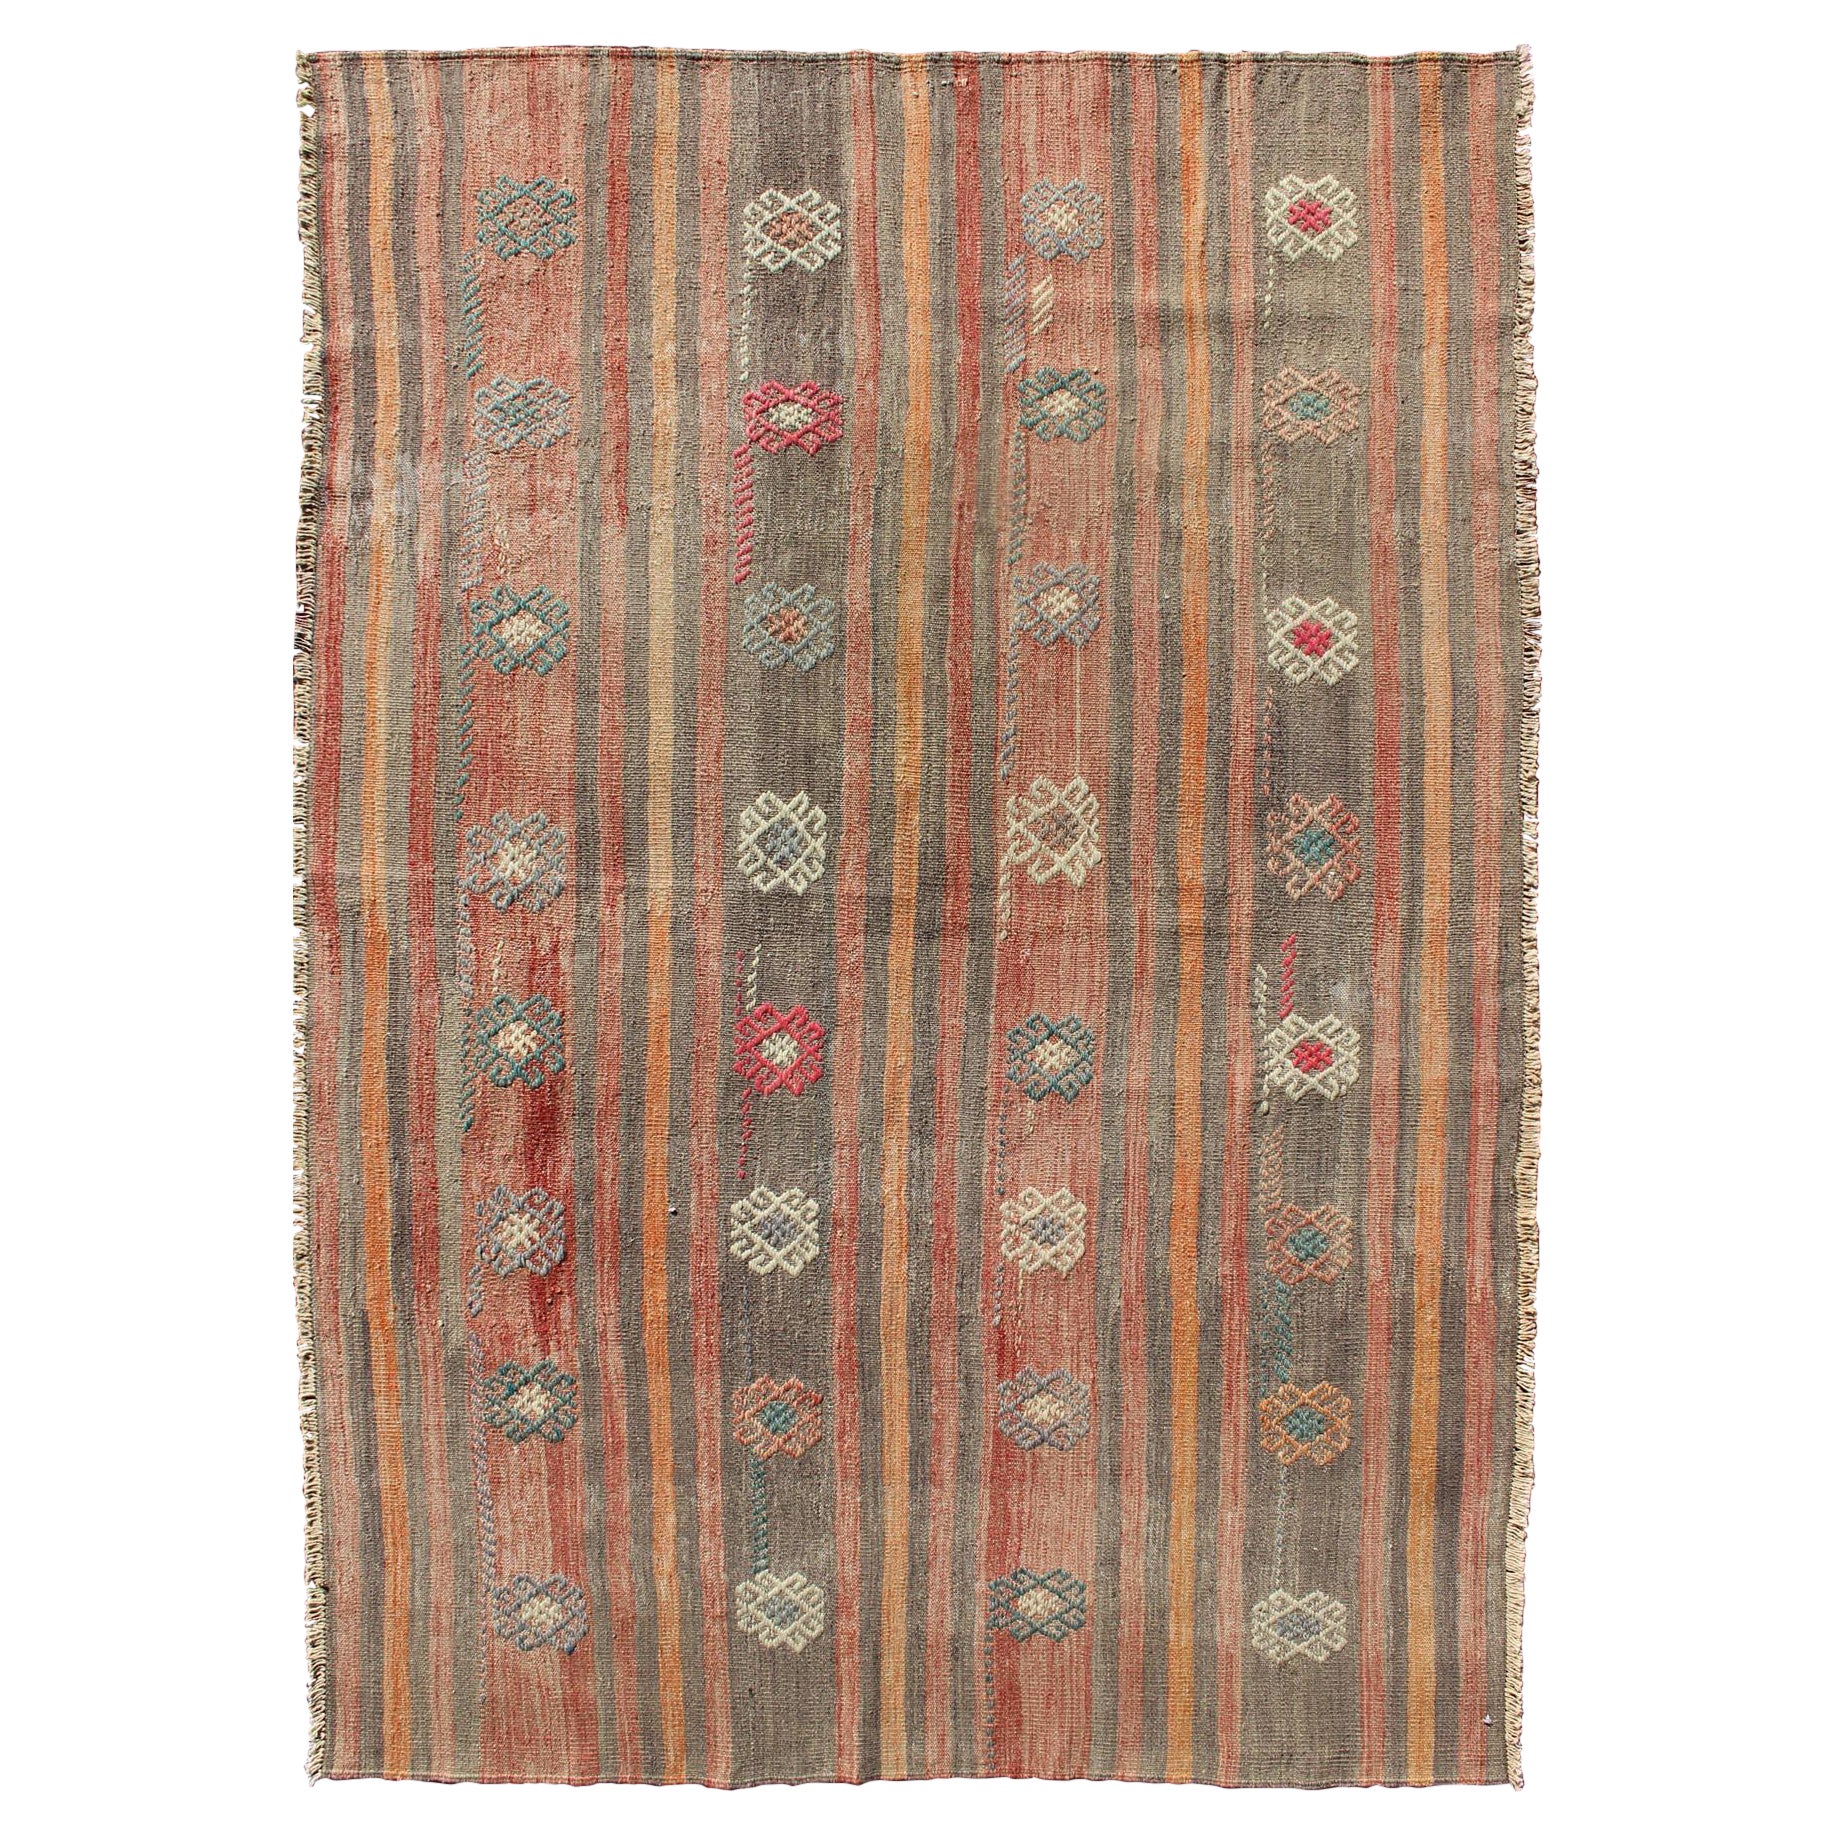 Bunter türkischer Flachgewebter Kelim-Teppich im Vintage-Stil mit gestreiftem geometrischem Muster